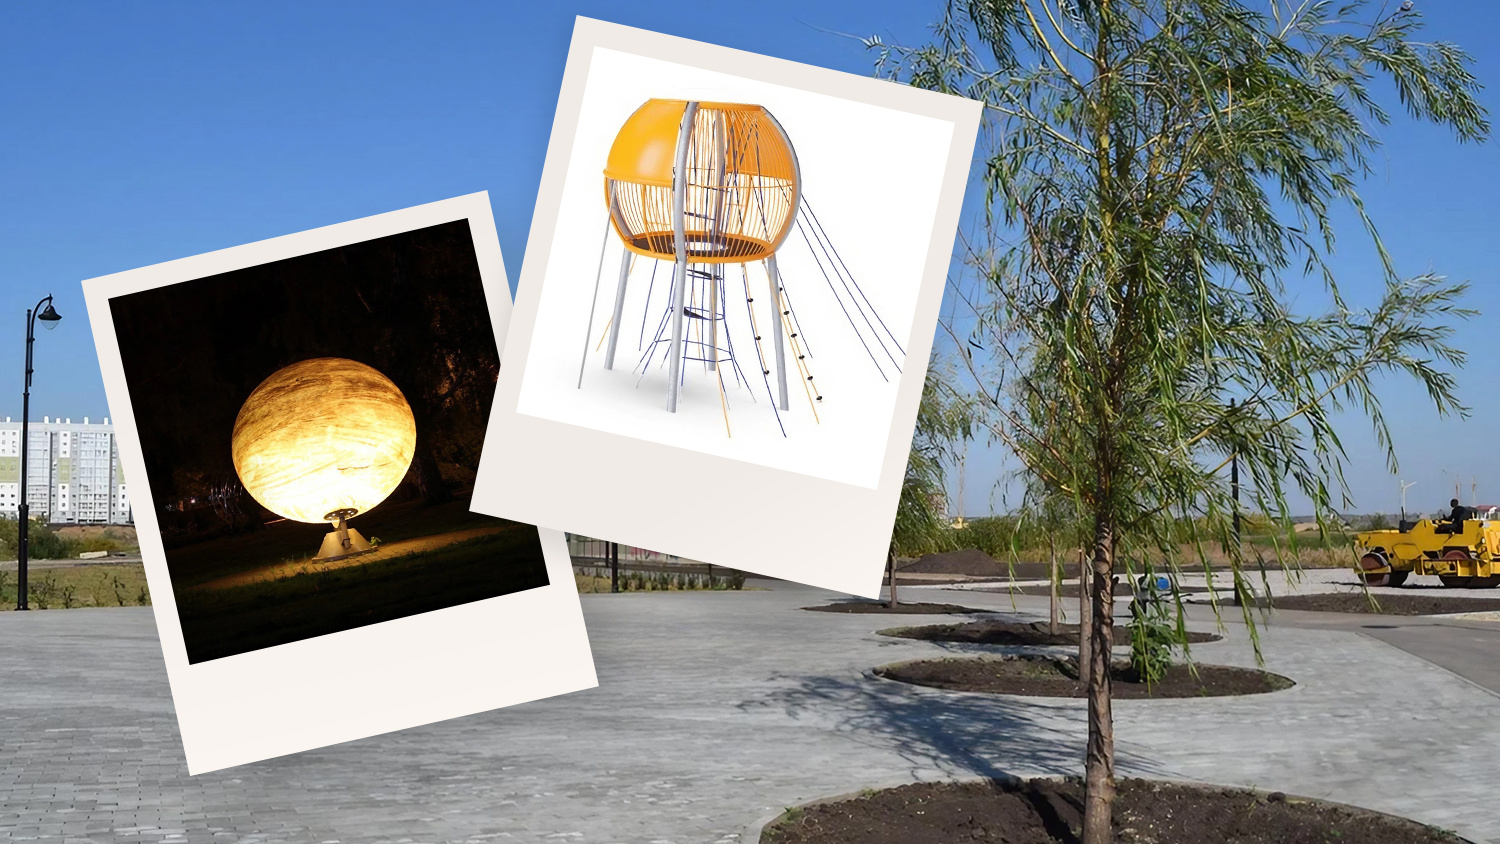 Юные астрономы оценят: в парке Кургана хотят сделать площадку с планетами и телескопом